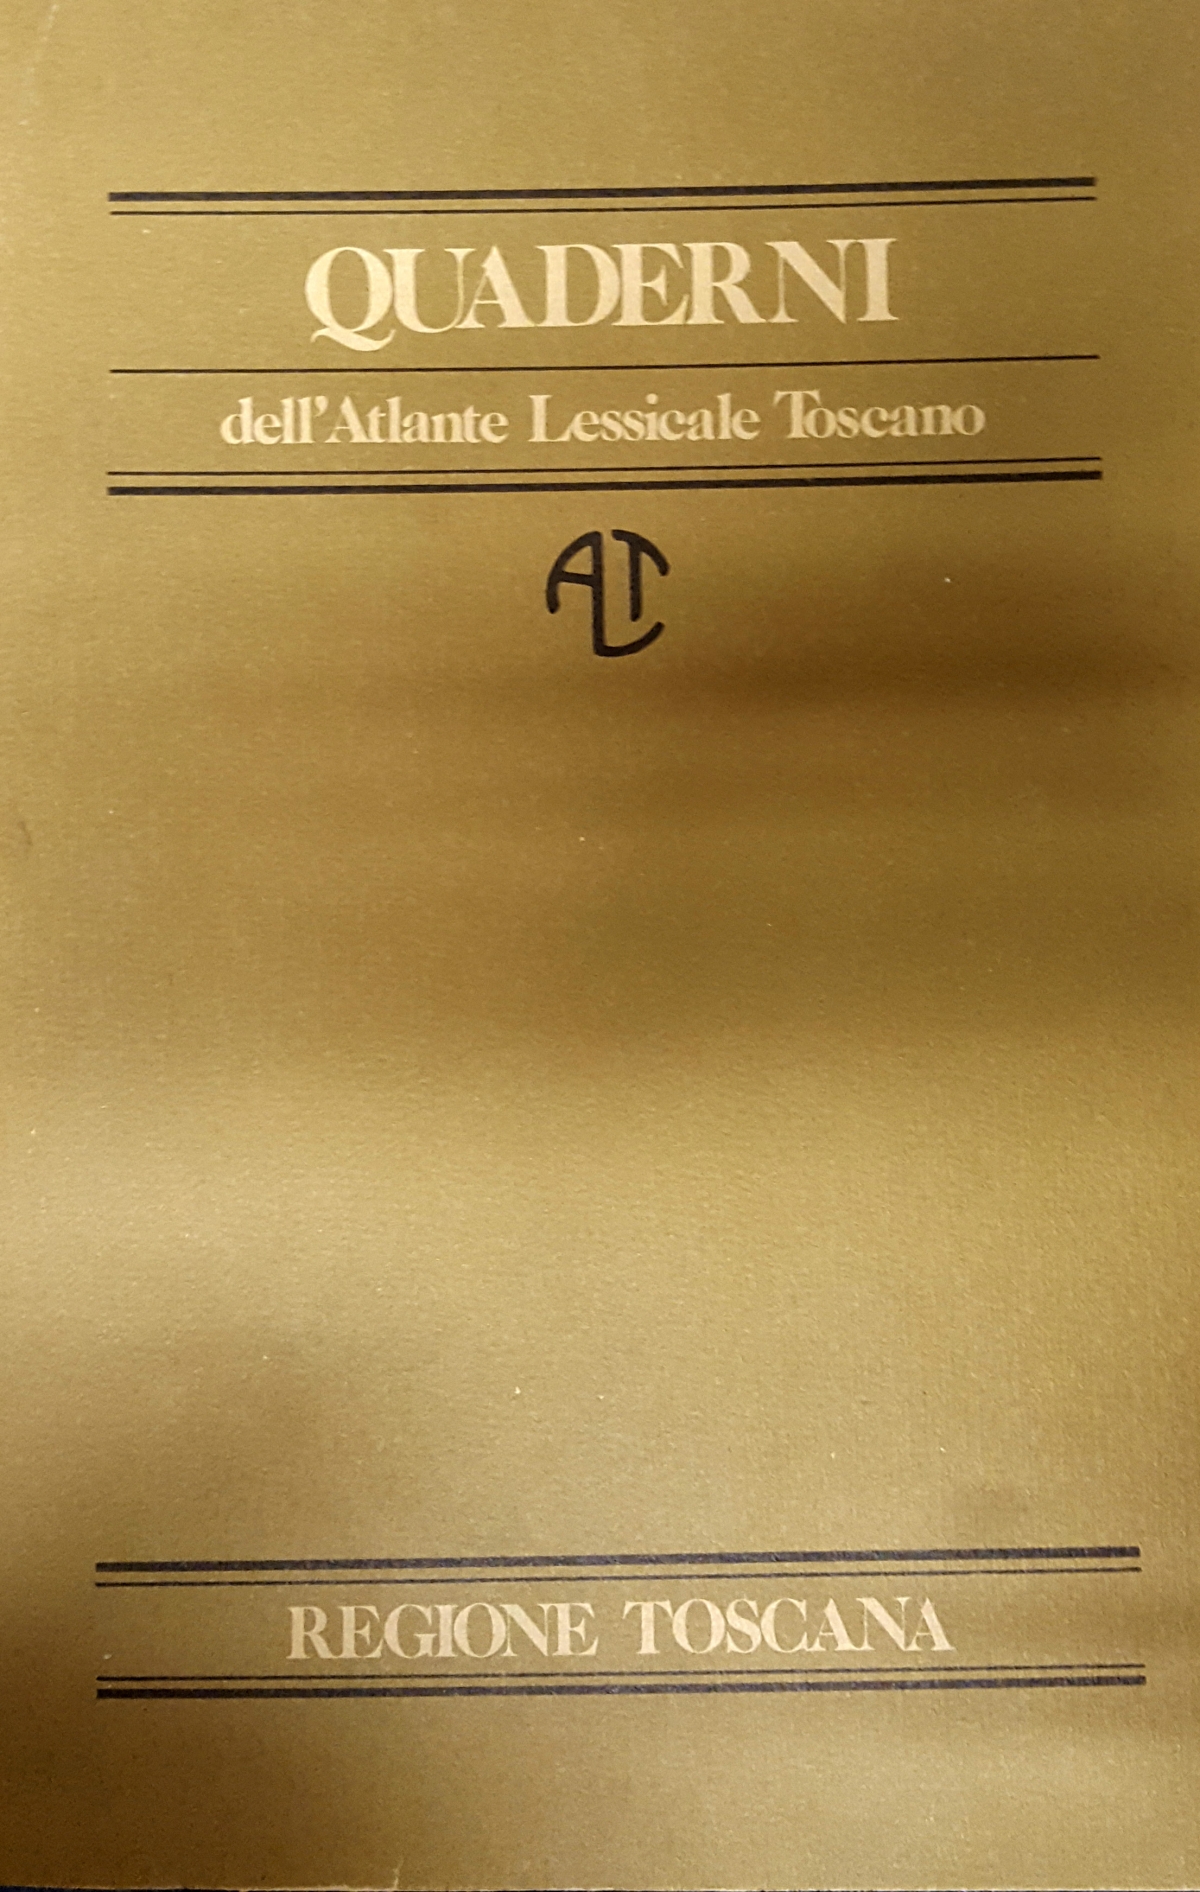 Quaderni dell’Atlante Lessicale Toscano